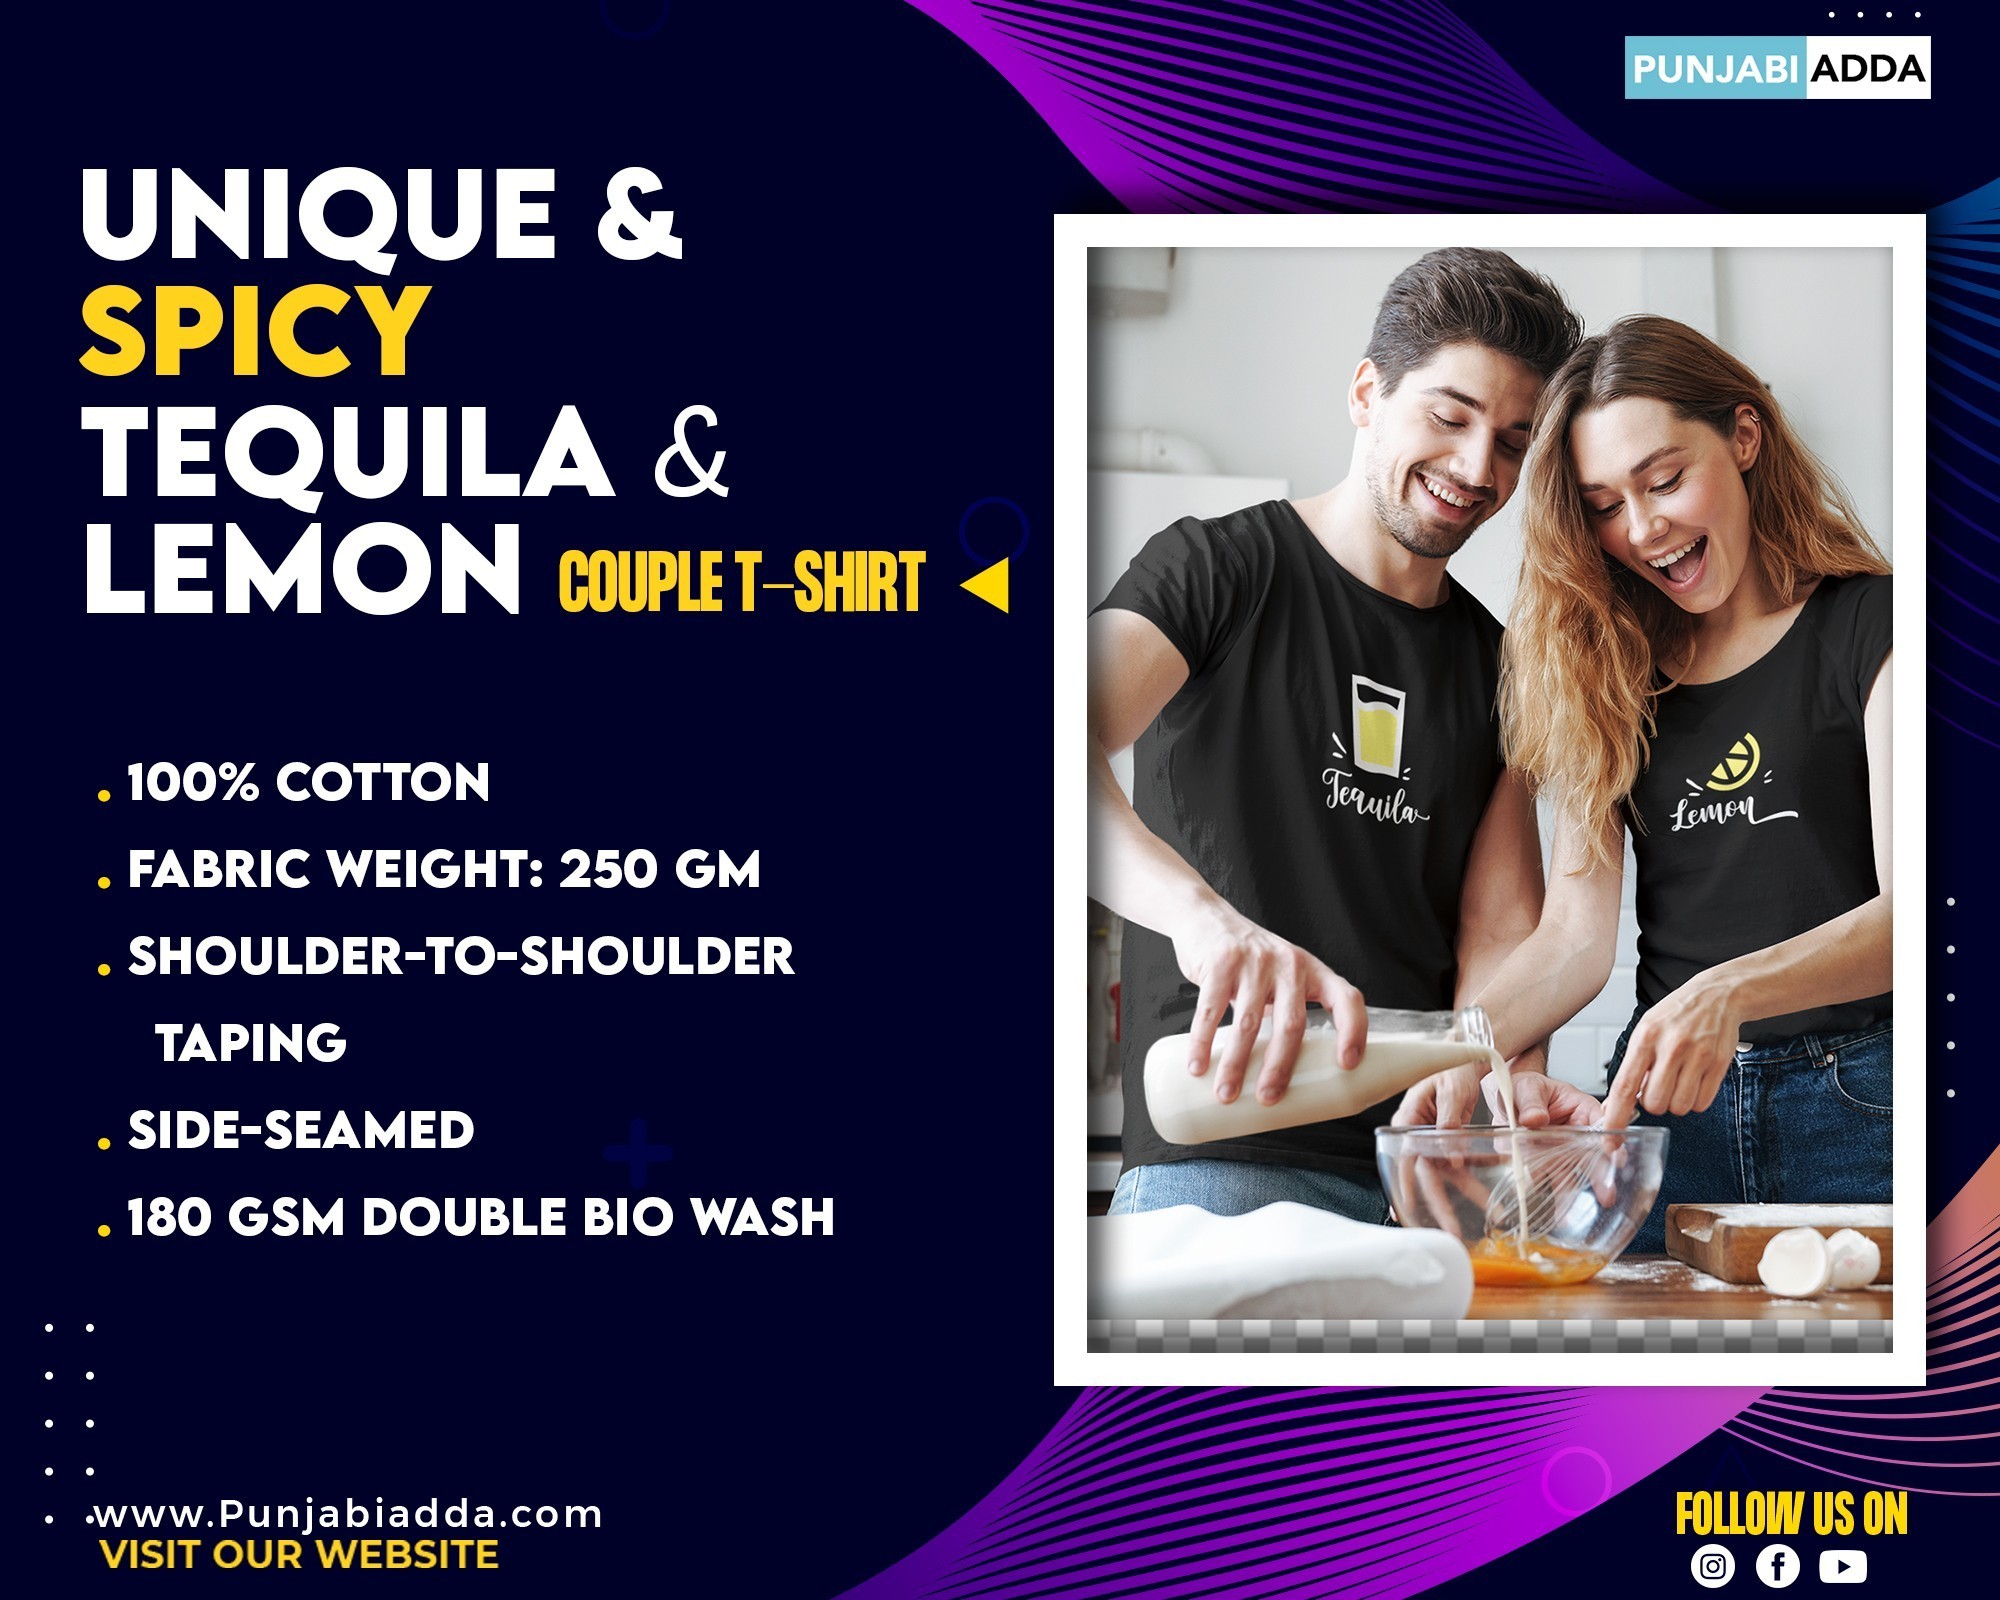 Buy Taquila And Lemon Same Tshirt for Couple– Punjabi Adda